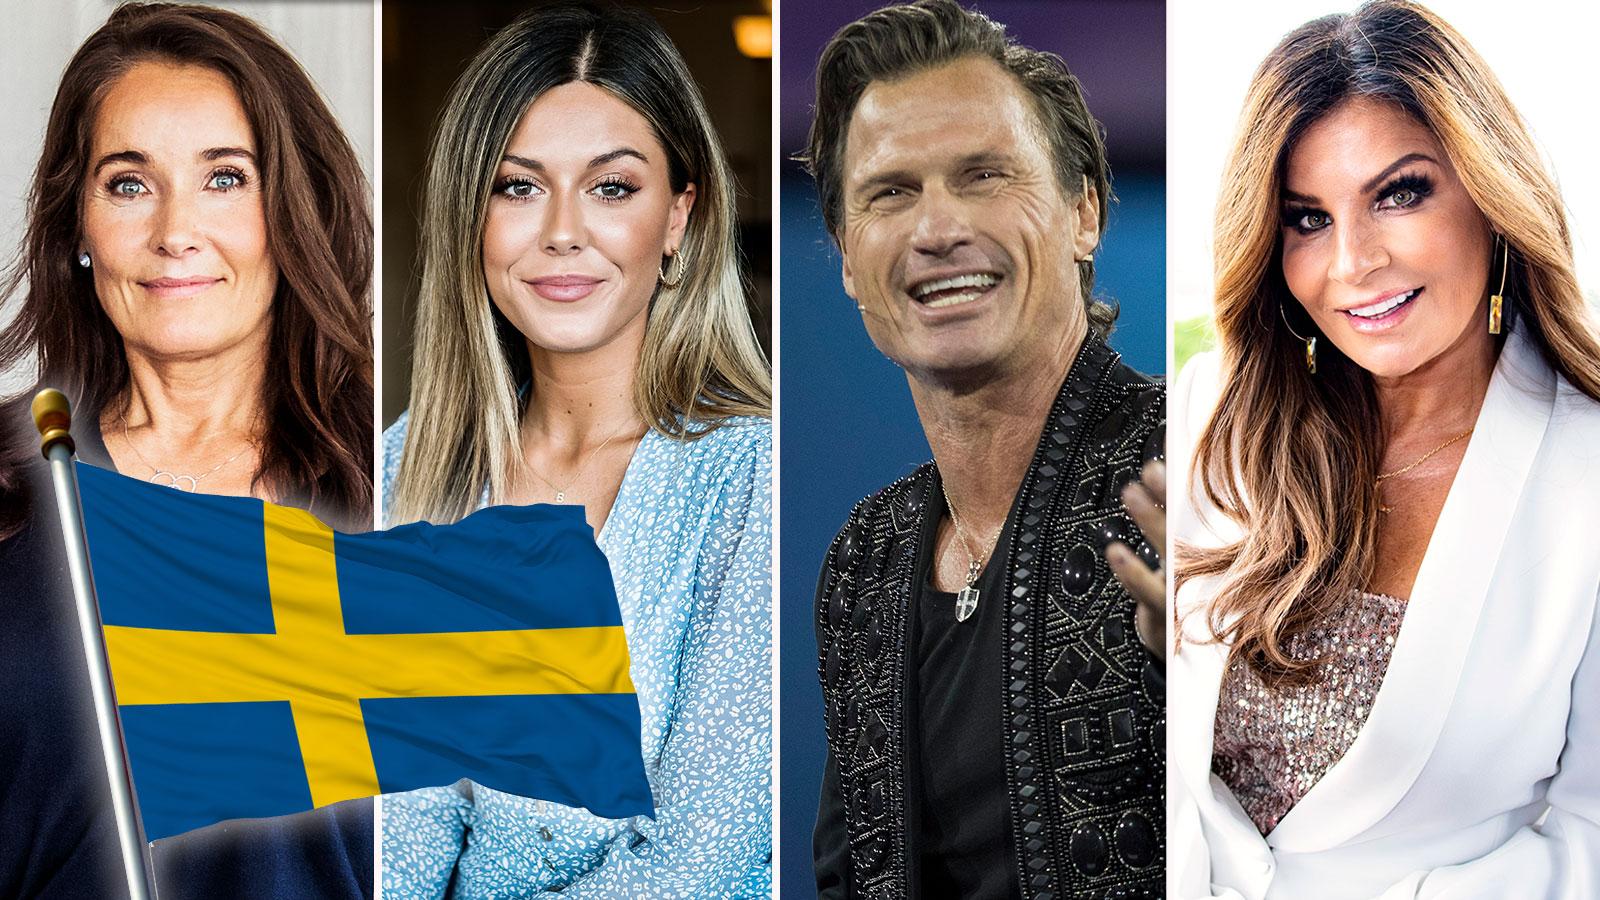 Agneta Sjödin, Bianca Ingrosso, Petter Stordalen och Carola Häggkvist har alla olika sätt att hylla Sverige på idag.